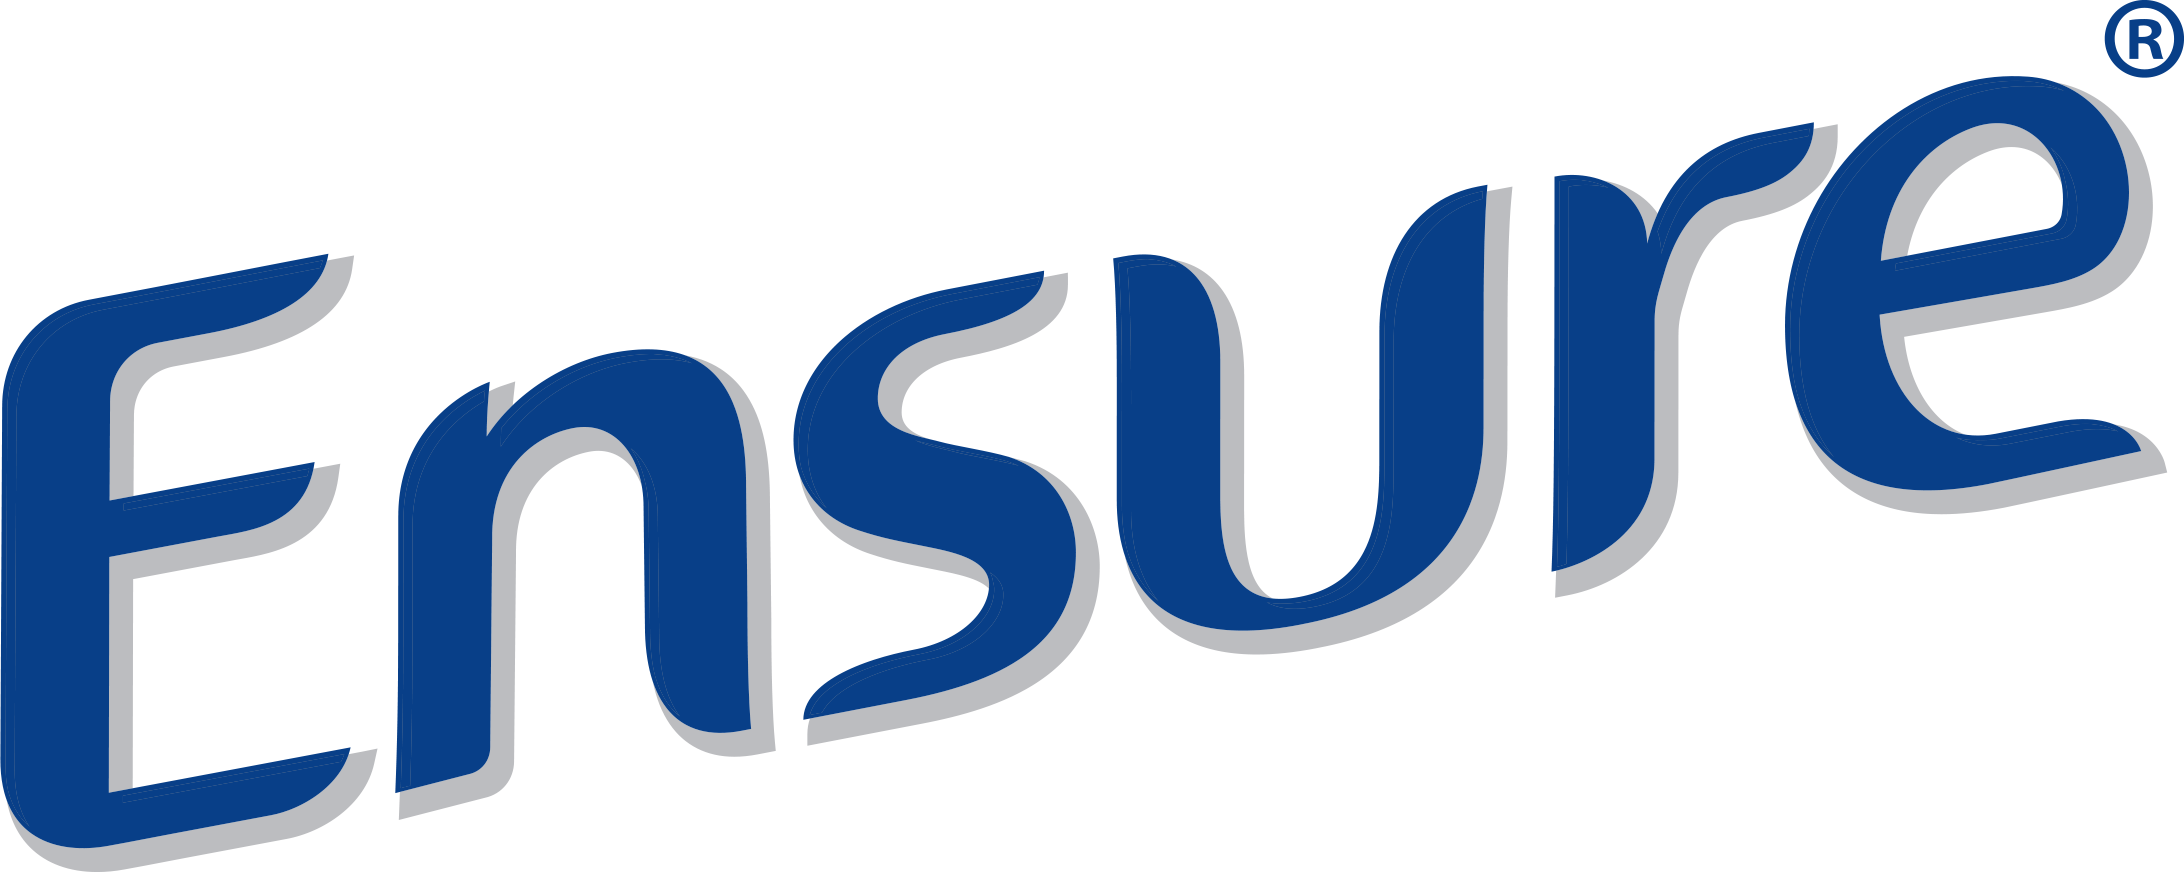 Logo Ensure